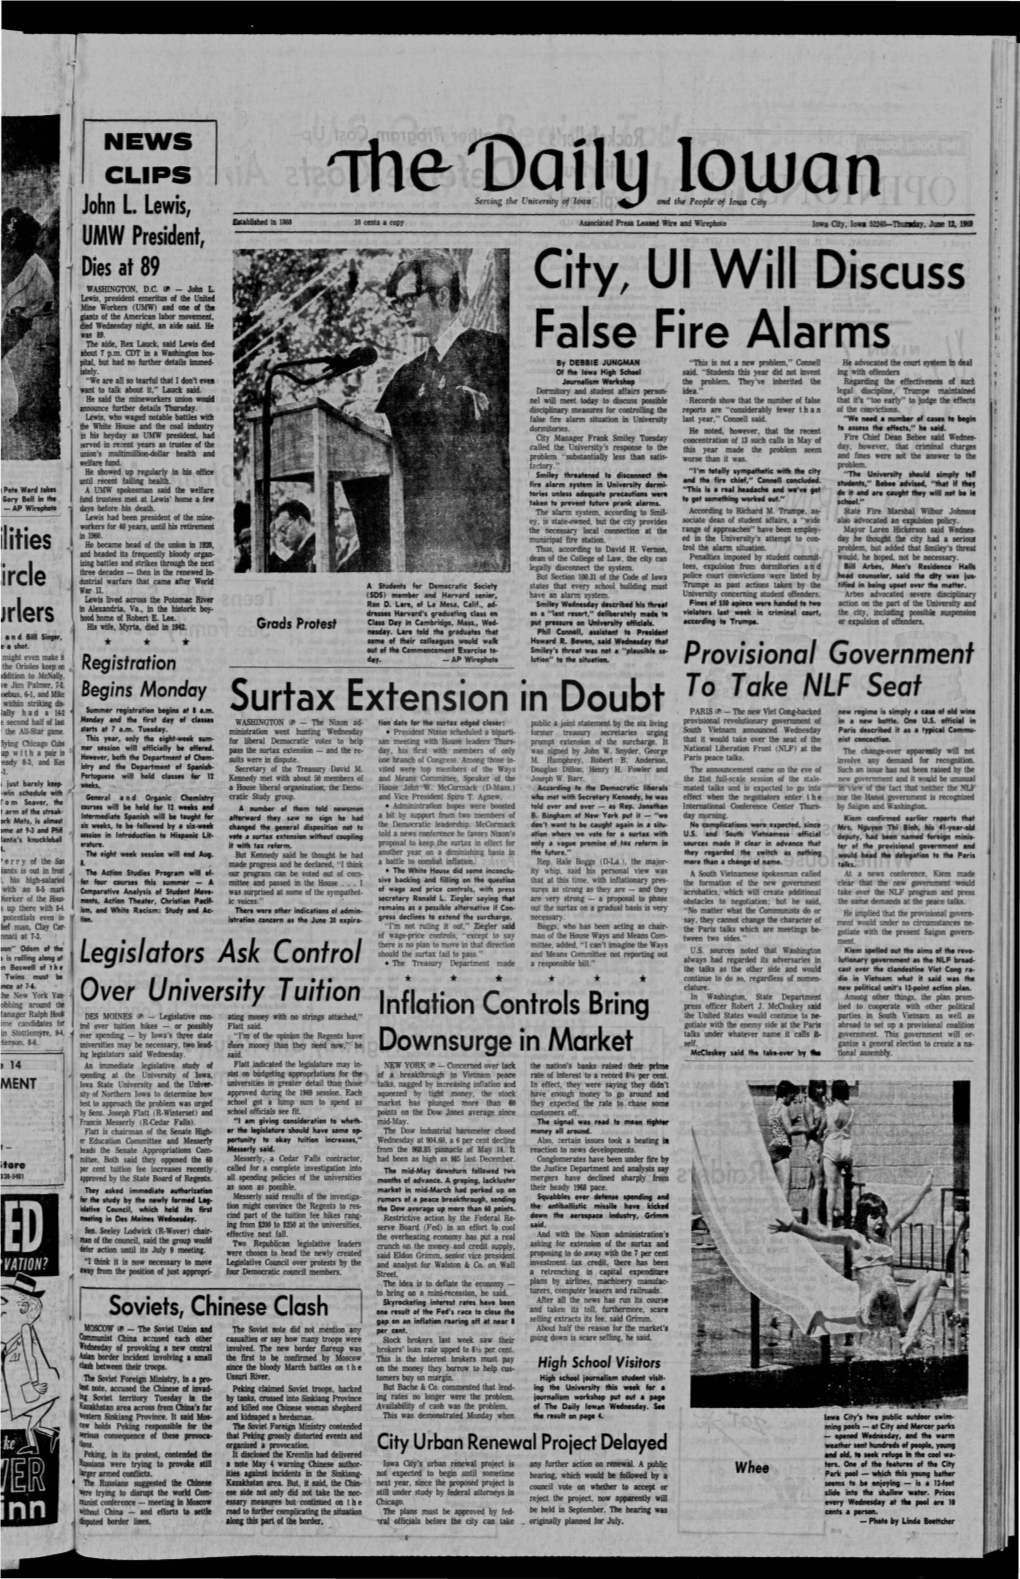 Daily Iowan (Iowa City, Iowa), 1969-06-12